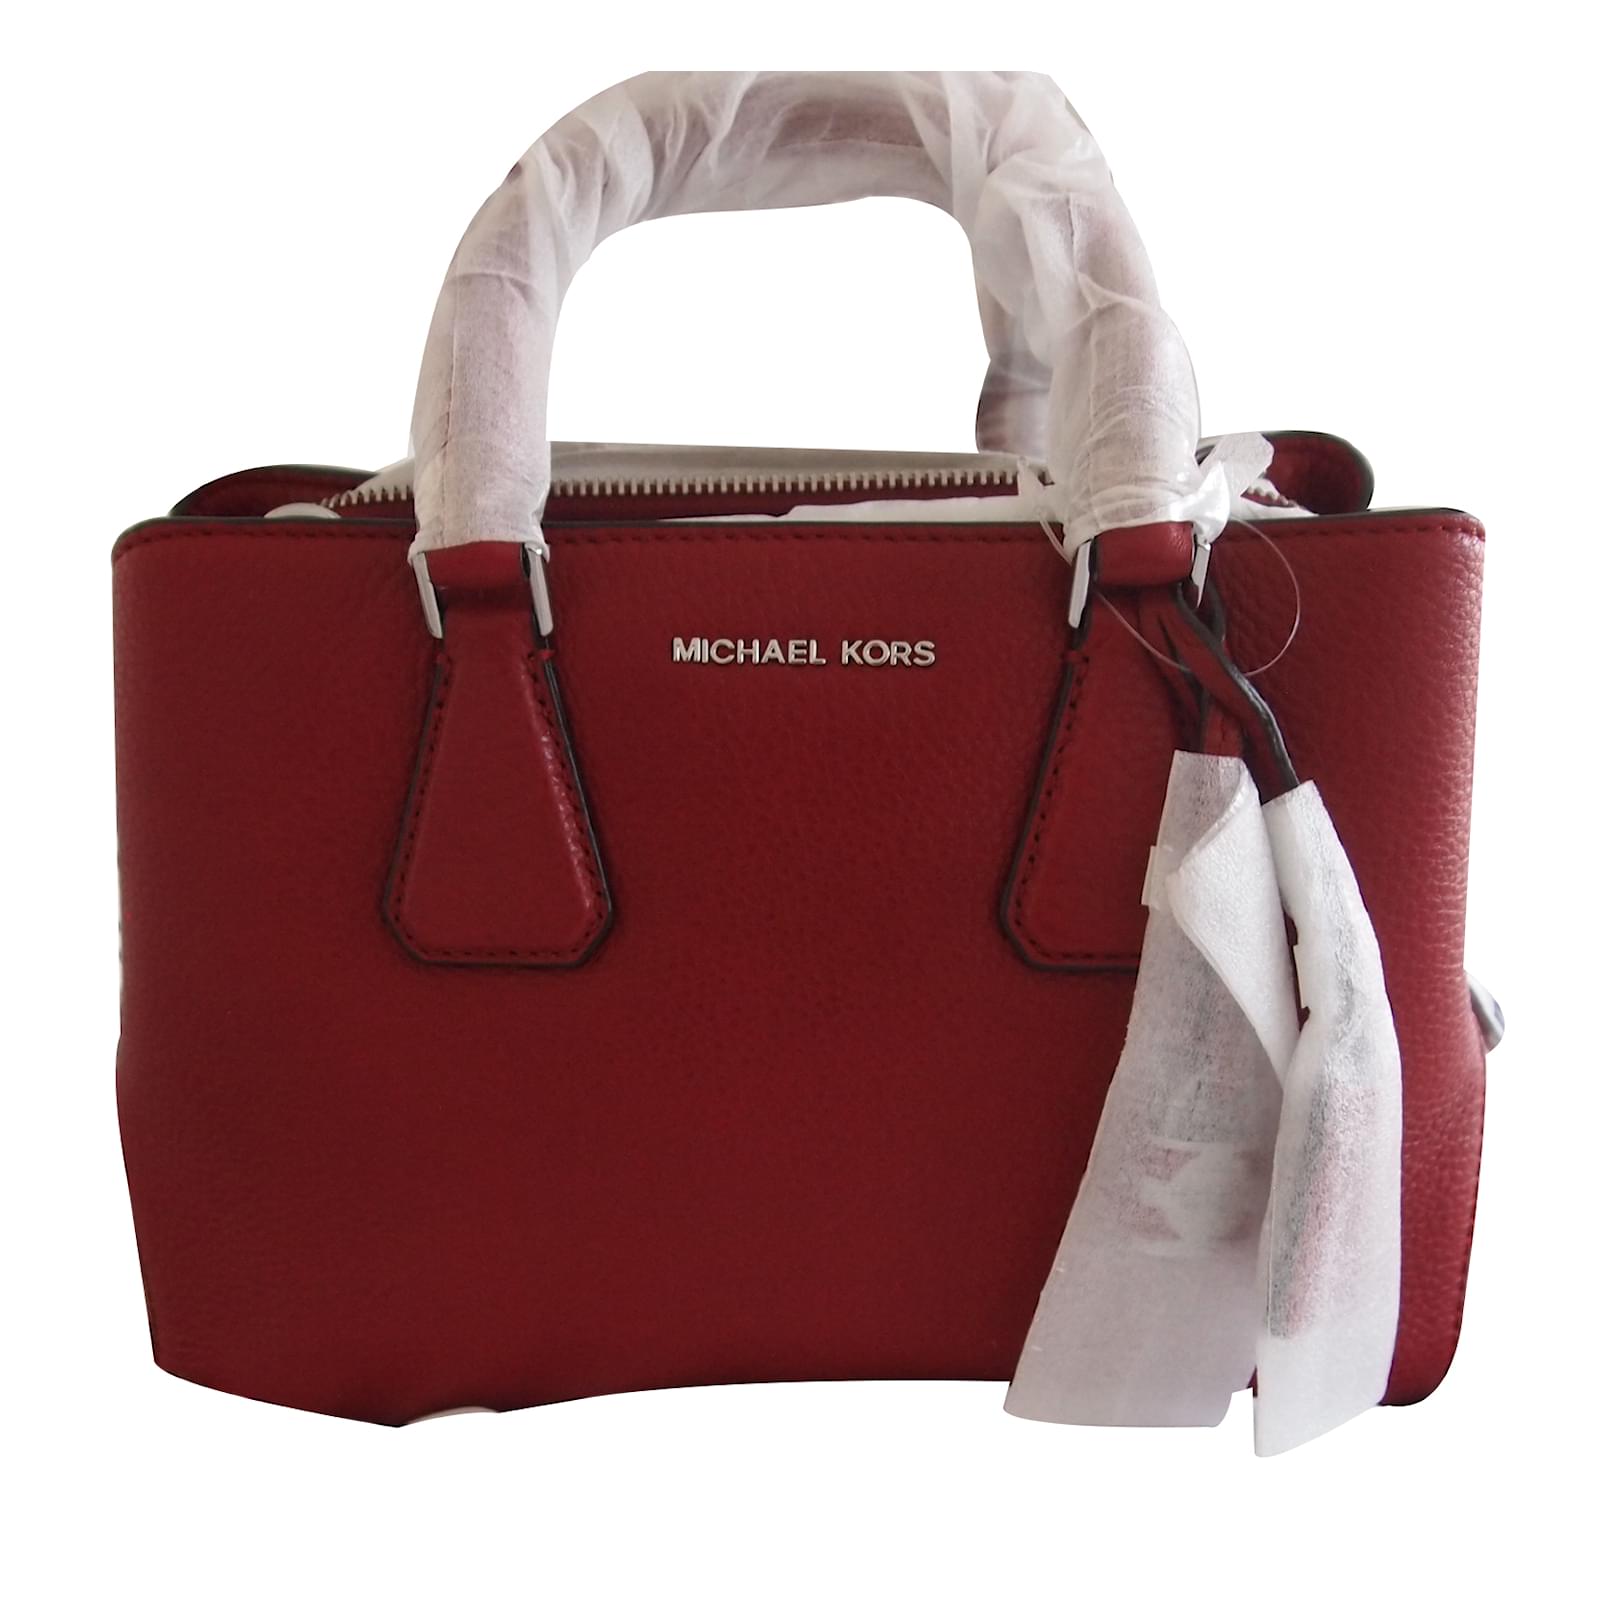 Michael Kors Handbag Handbags Leather 